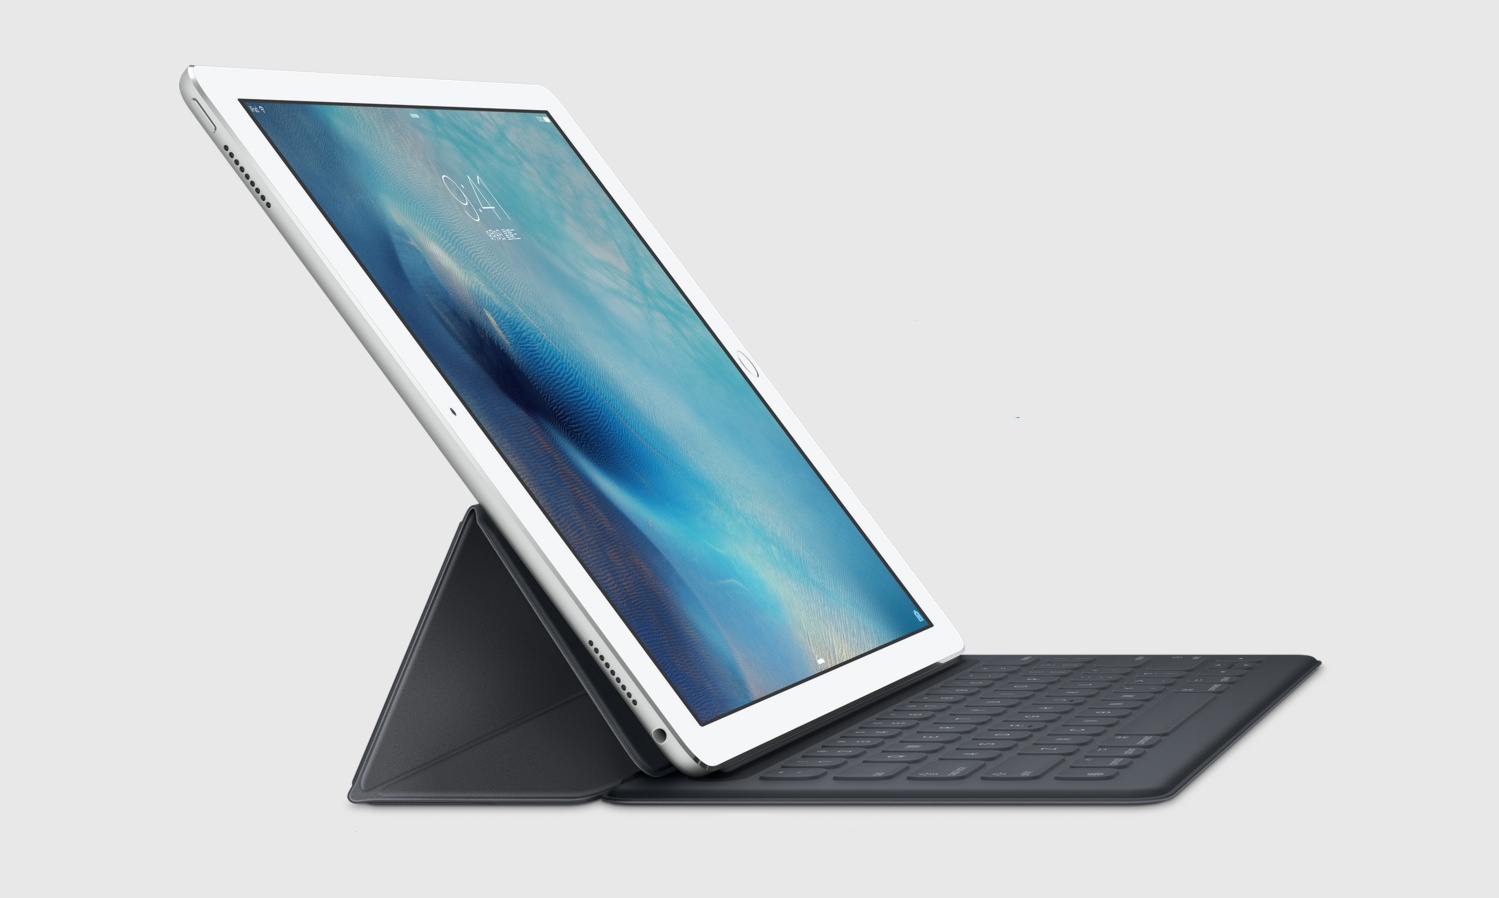 苹果新iPad Pro曝光:A10X处理器性能残暴,还有